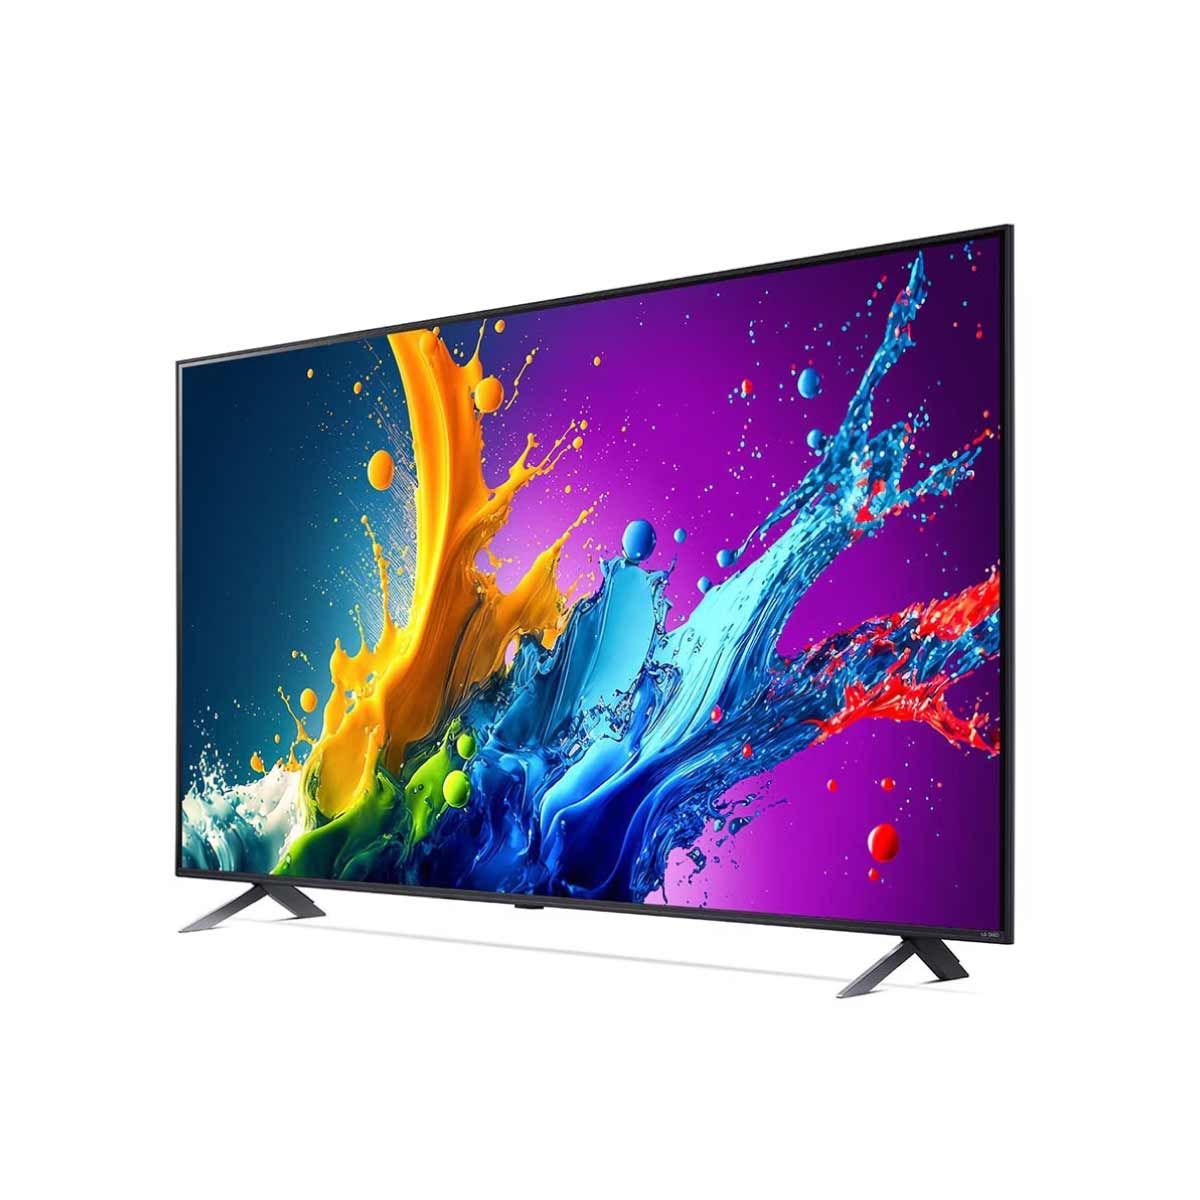 LG QNED Smart TV 4K 2024 รุ่น 65QNED80TSA สมาร์ททีวีขนาด 65 นิ้ว